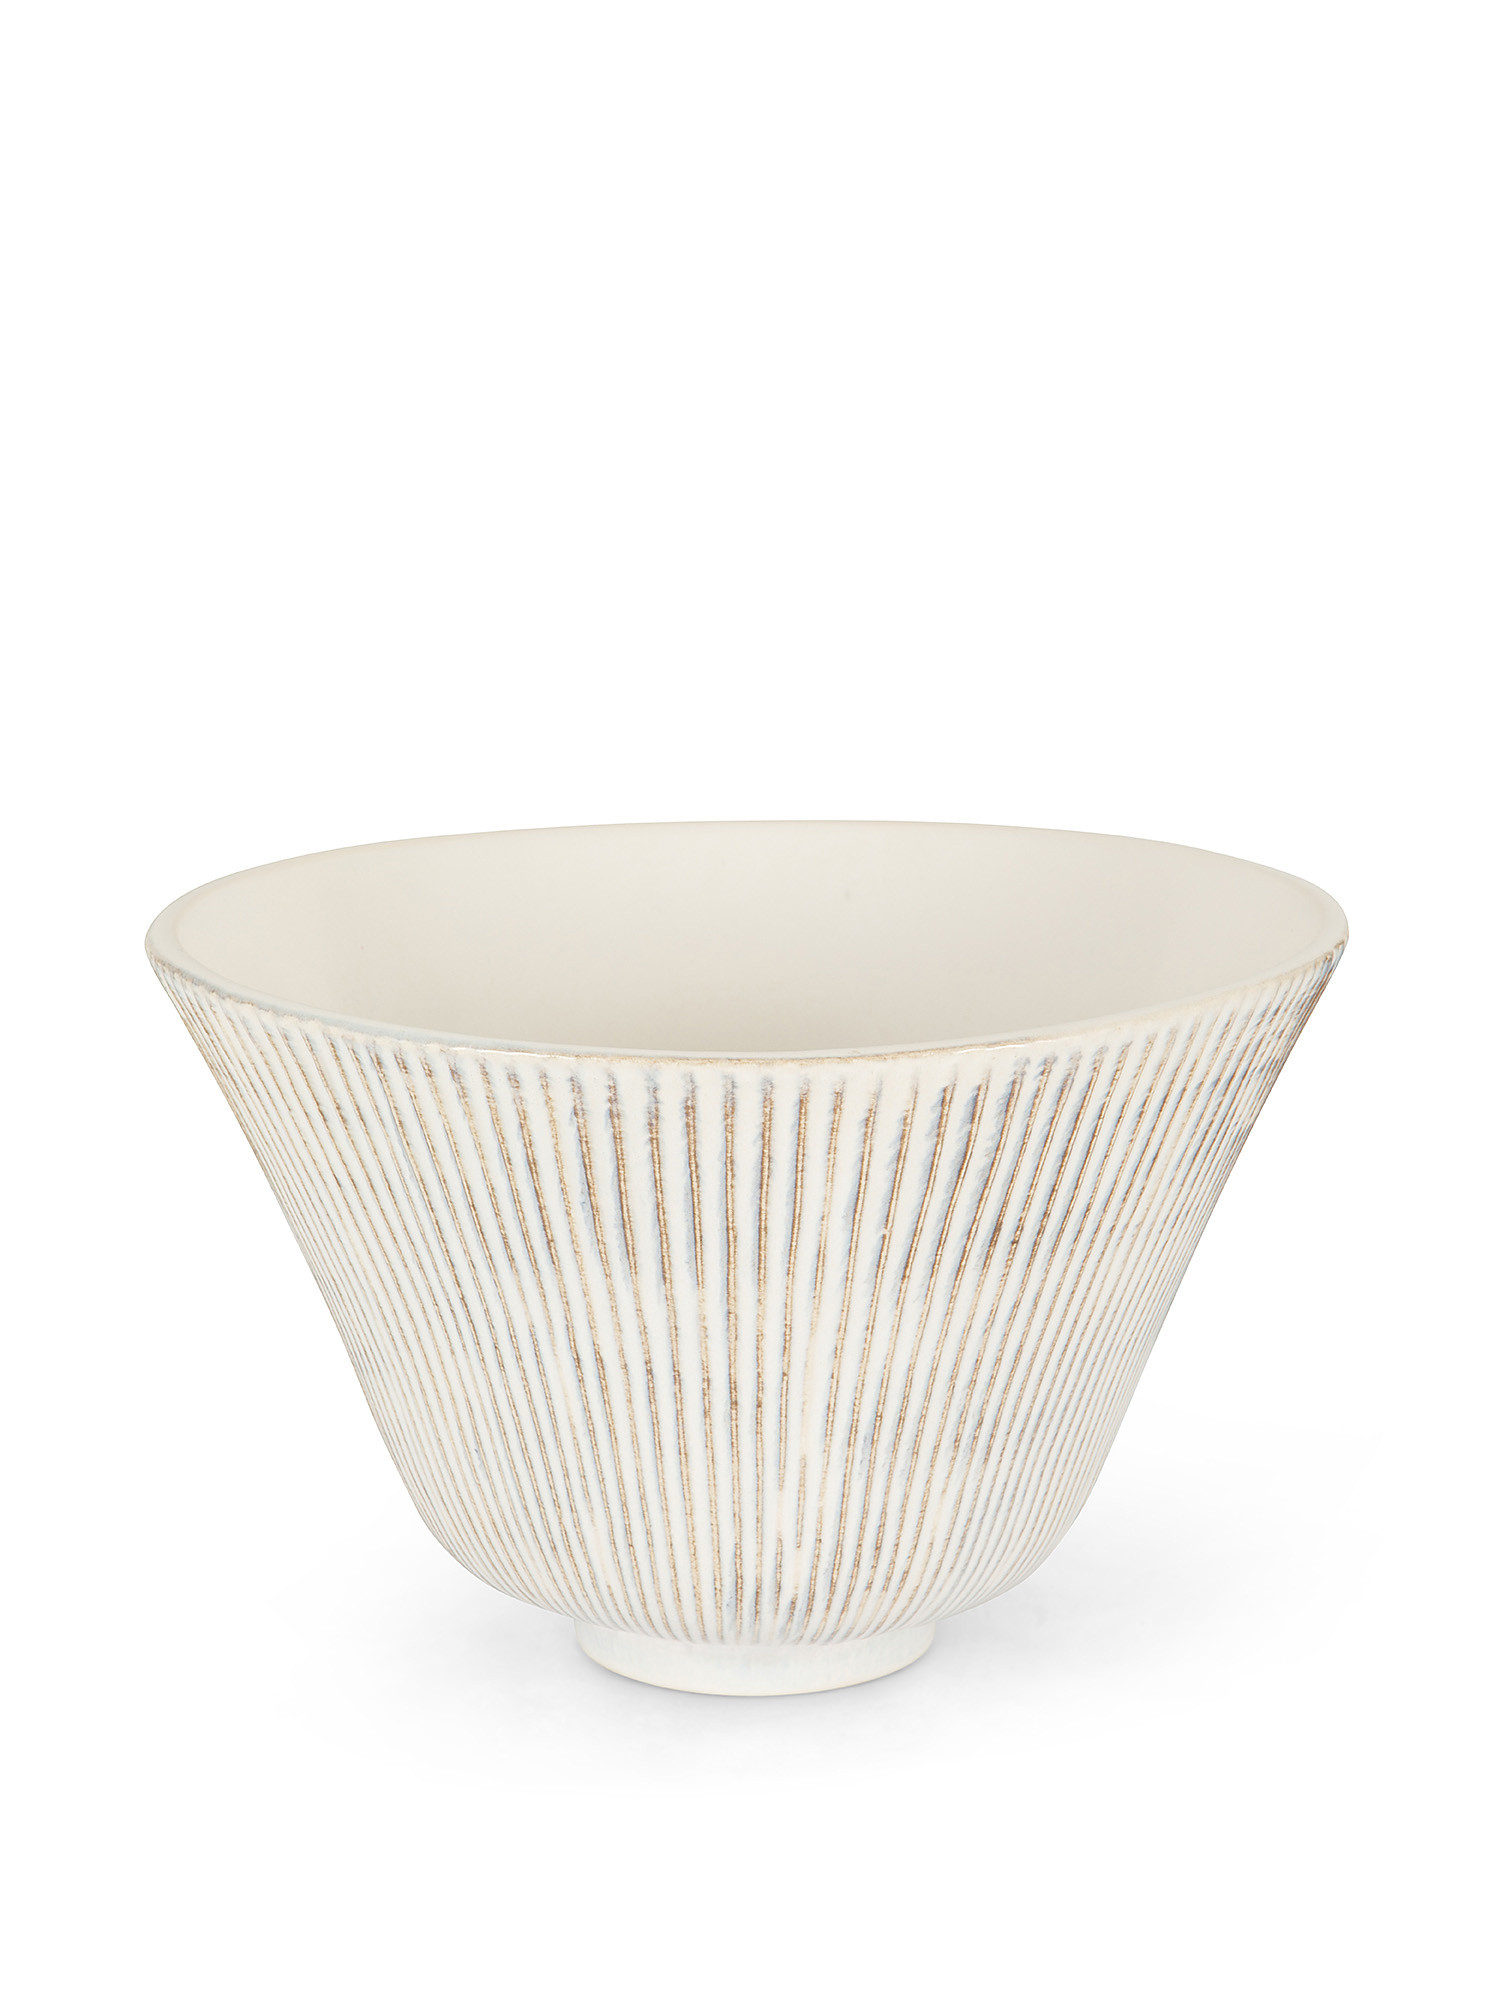 Coppa ceramica effetto rigato, Bianco, large